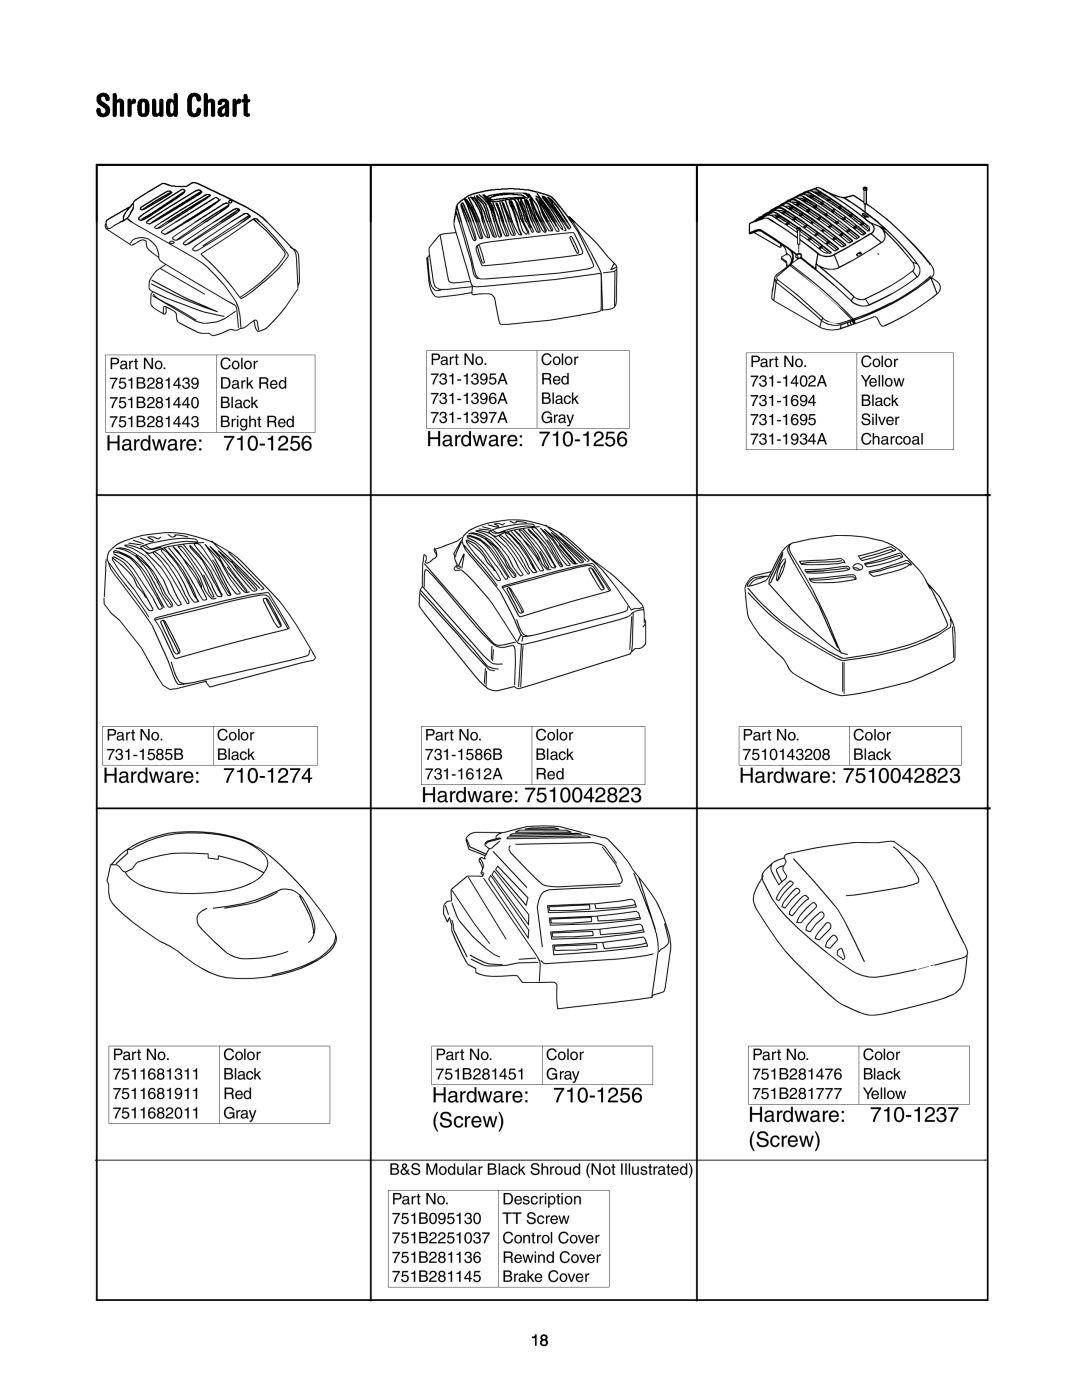 MTD 435 manual Shroud Chart 